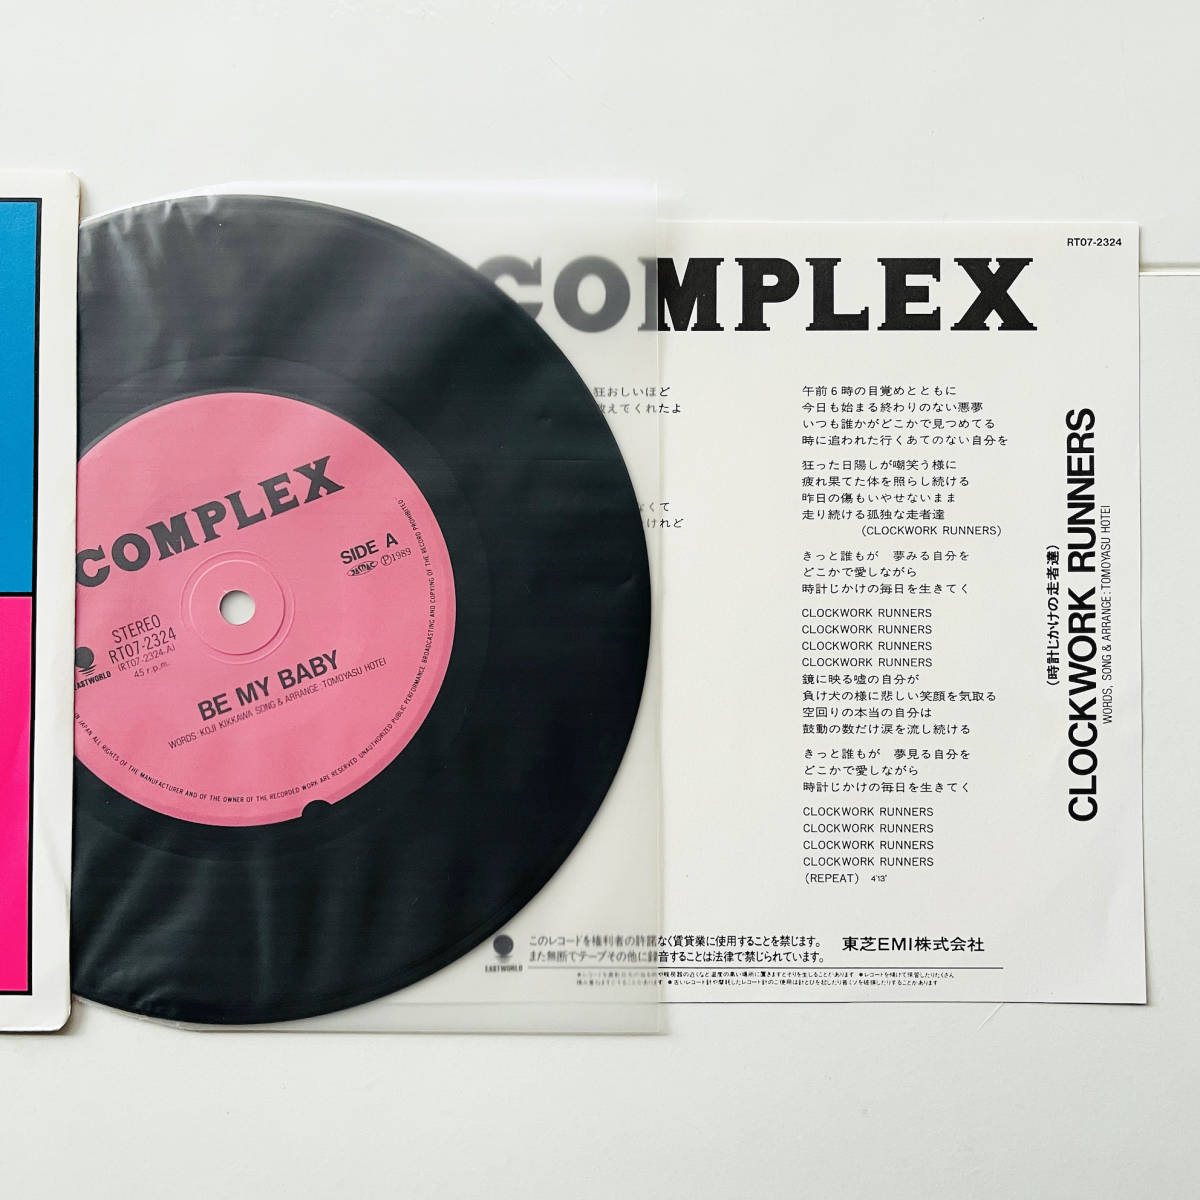 ステッカー付7インチレコードComplex Be My Baby コンプレックス